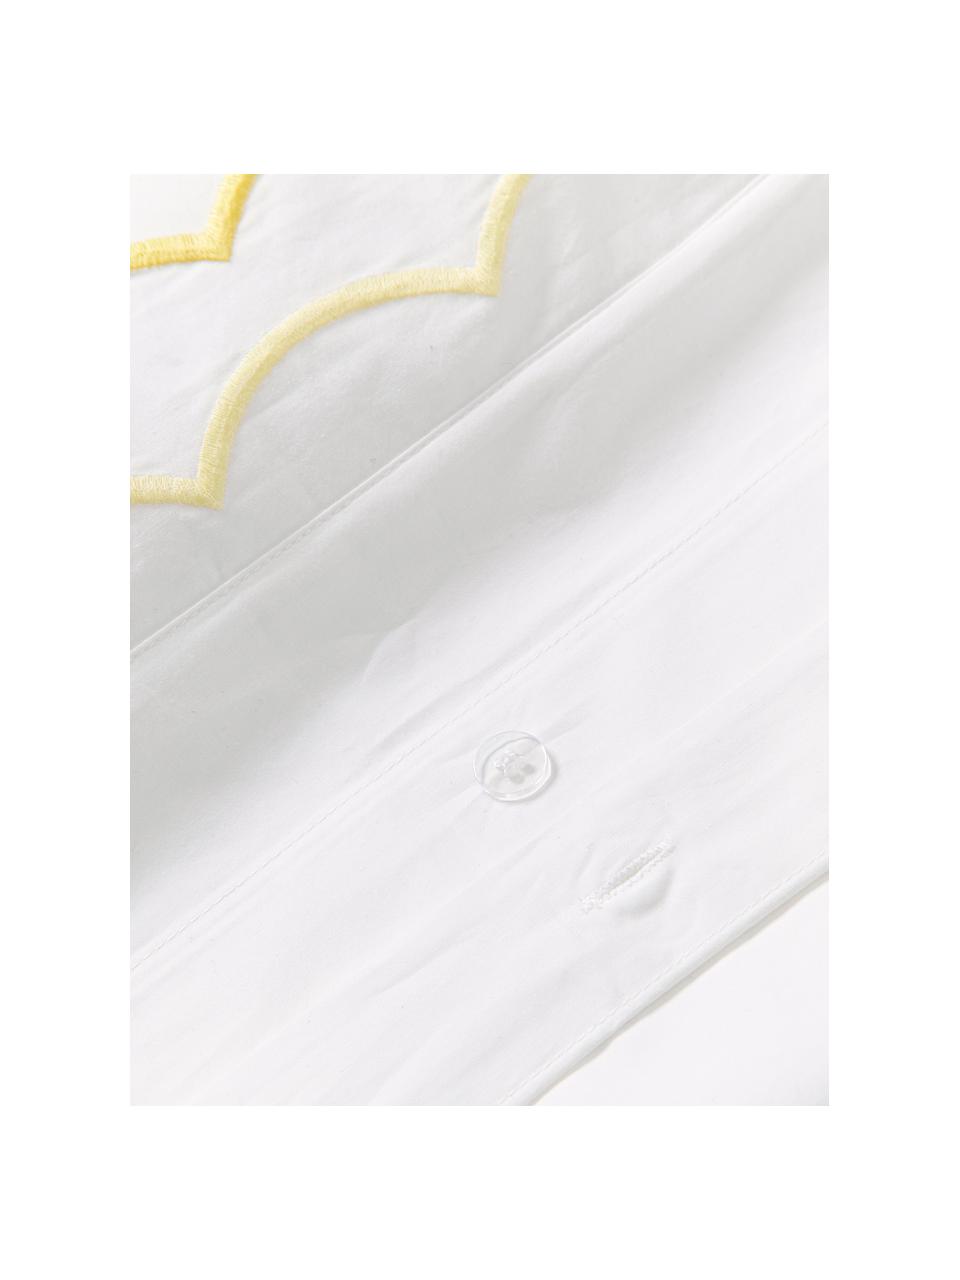 Copripiumino in cotone con volant e orlo ricamato Atina, 100% cotone

Densità dei fili 200 TC, qualità Comfort

La biancheria da letto in cotone è piacevolmente morbida sulla pelle, assorbe bene l'umidità ed è adatta per chi soffre di allergie

Il materiale utilizzato in questo prodotto è stato testato per sostanze nocive e certificato secondo STANDARD 100 by OEKO-TEX® (10817CIT, CITEVE)., Bianco, giallo chiaro, Larg. 220 x Lung. 240 cm